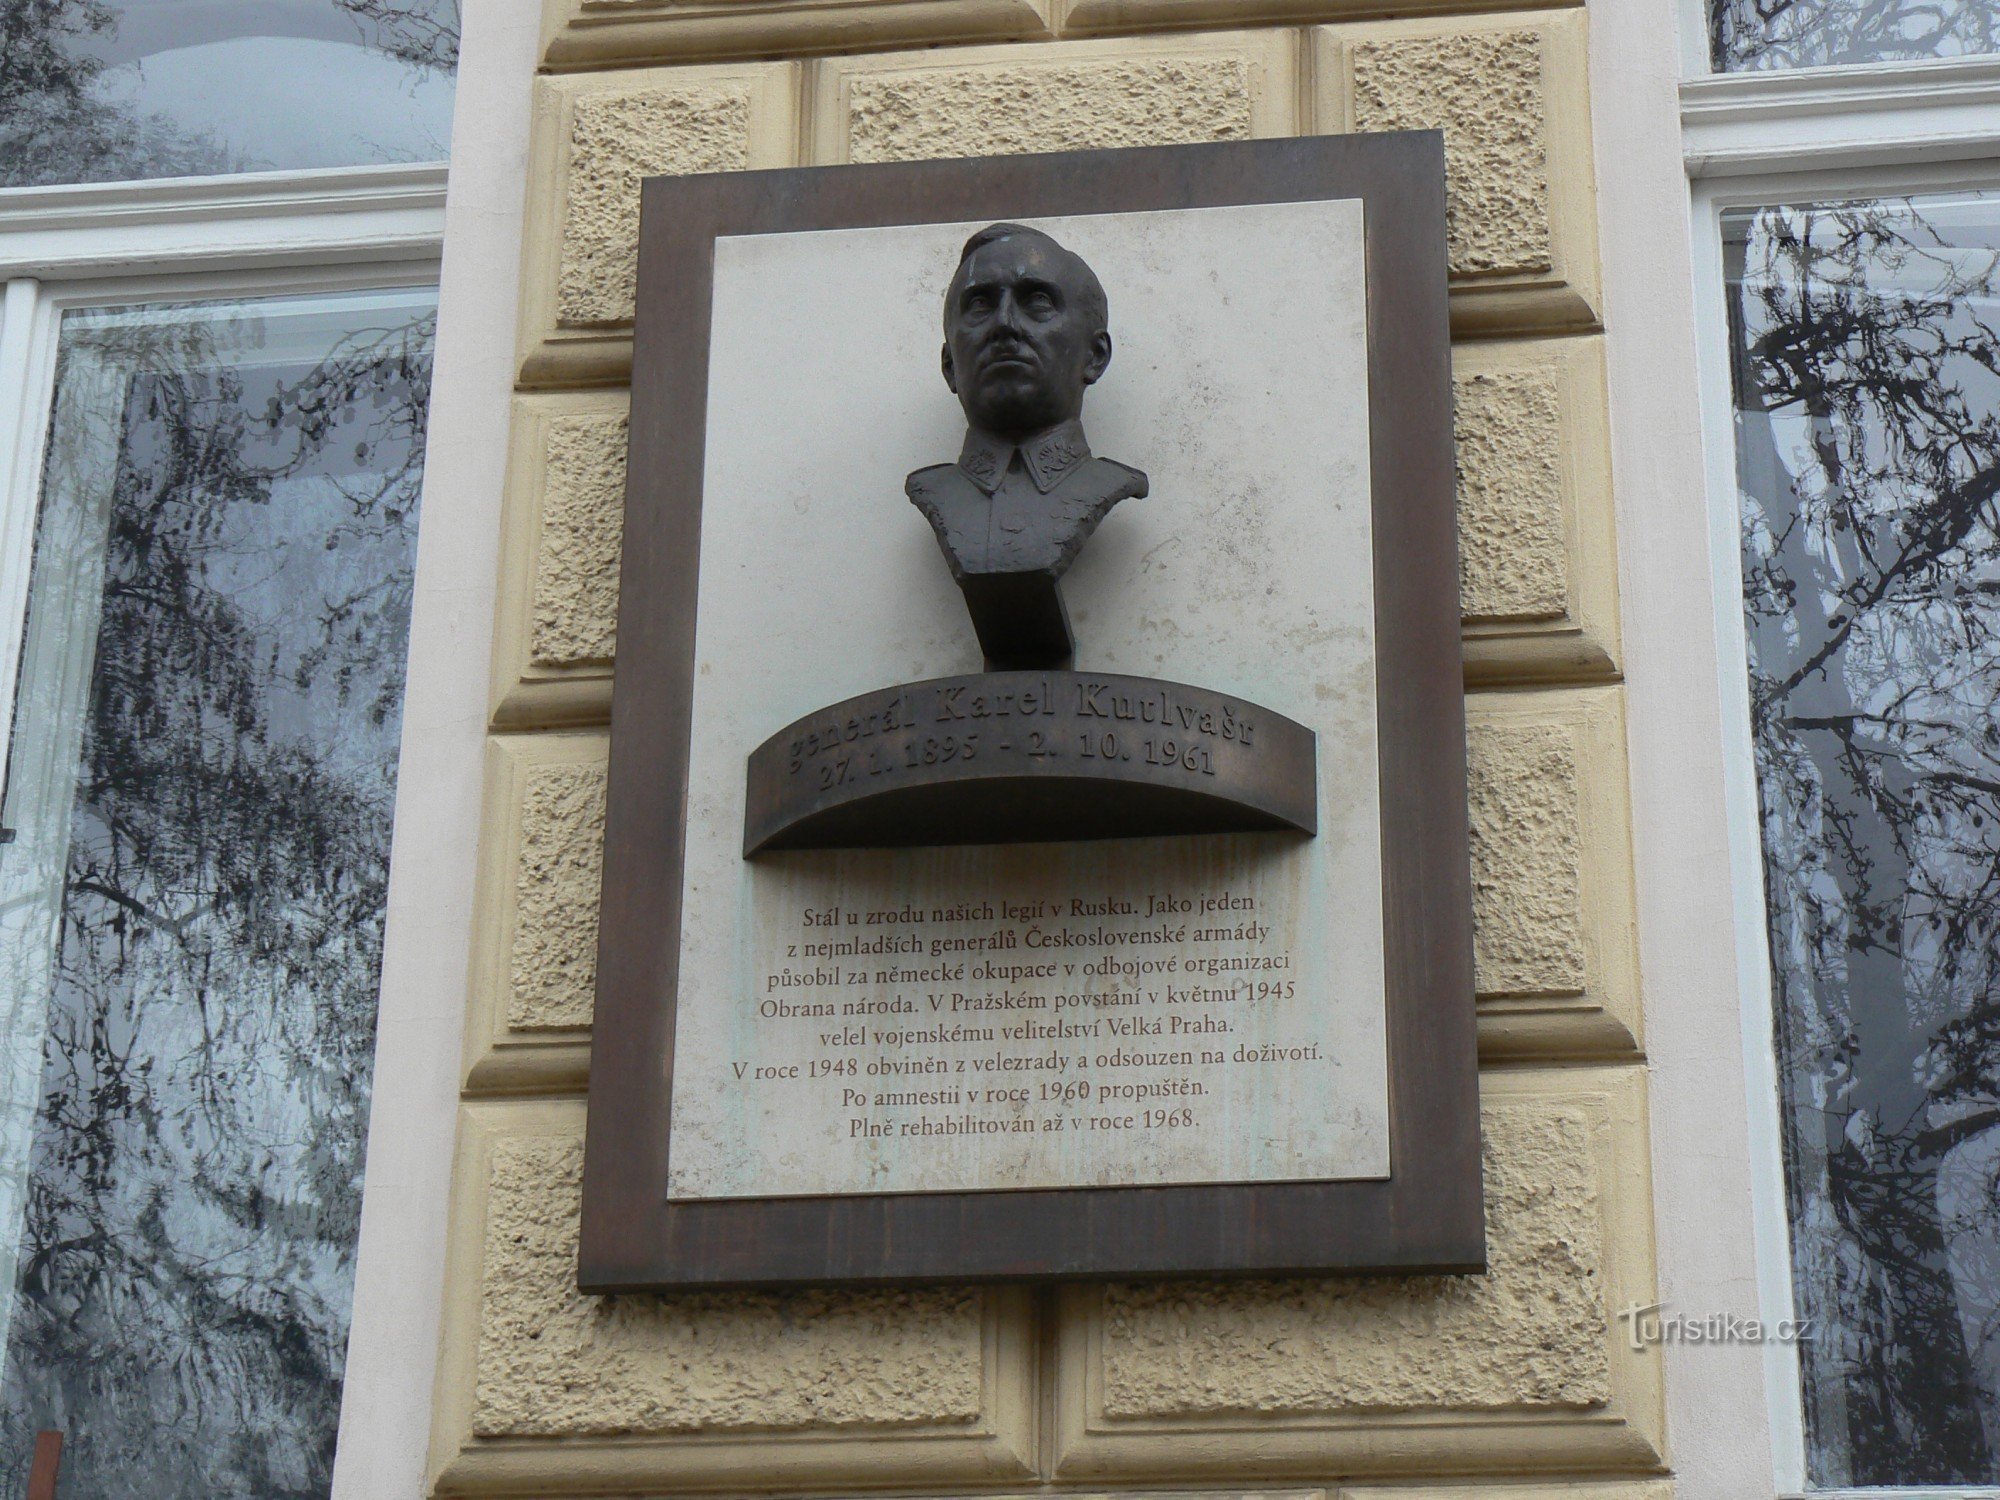 Placă memorială a generalului Kutlvašr